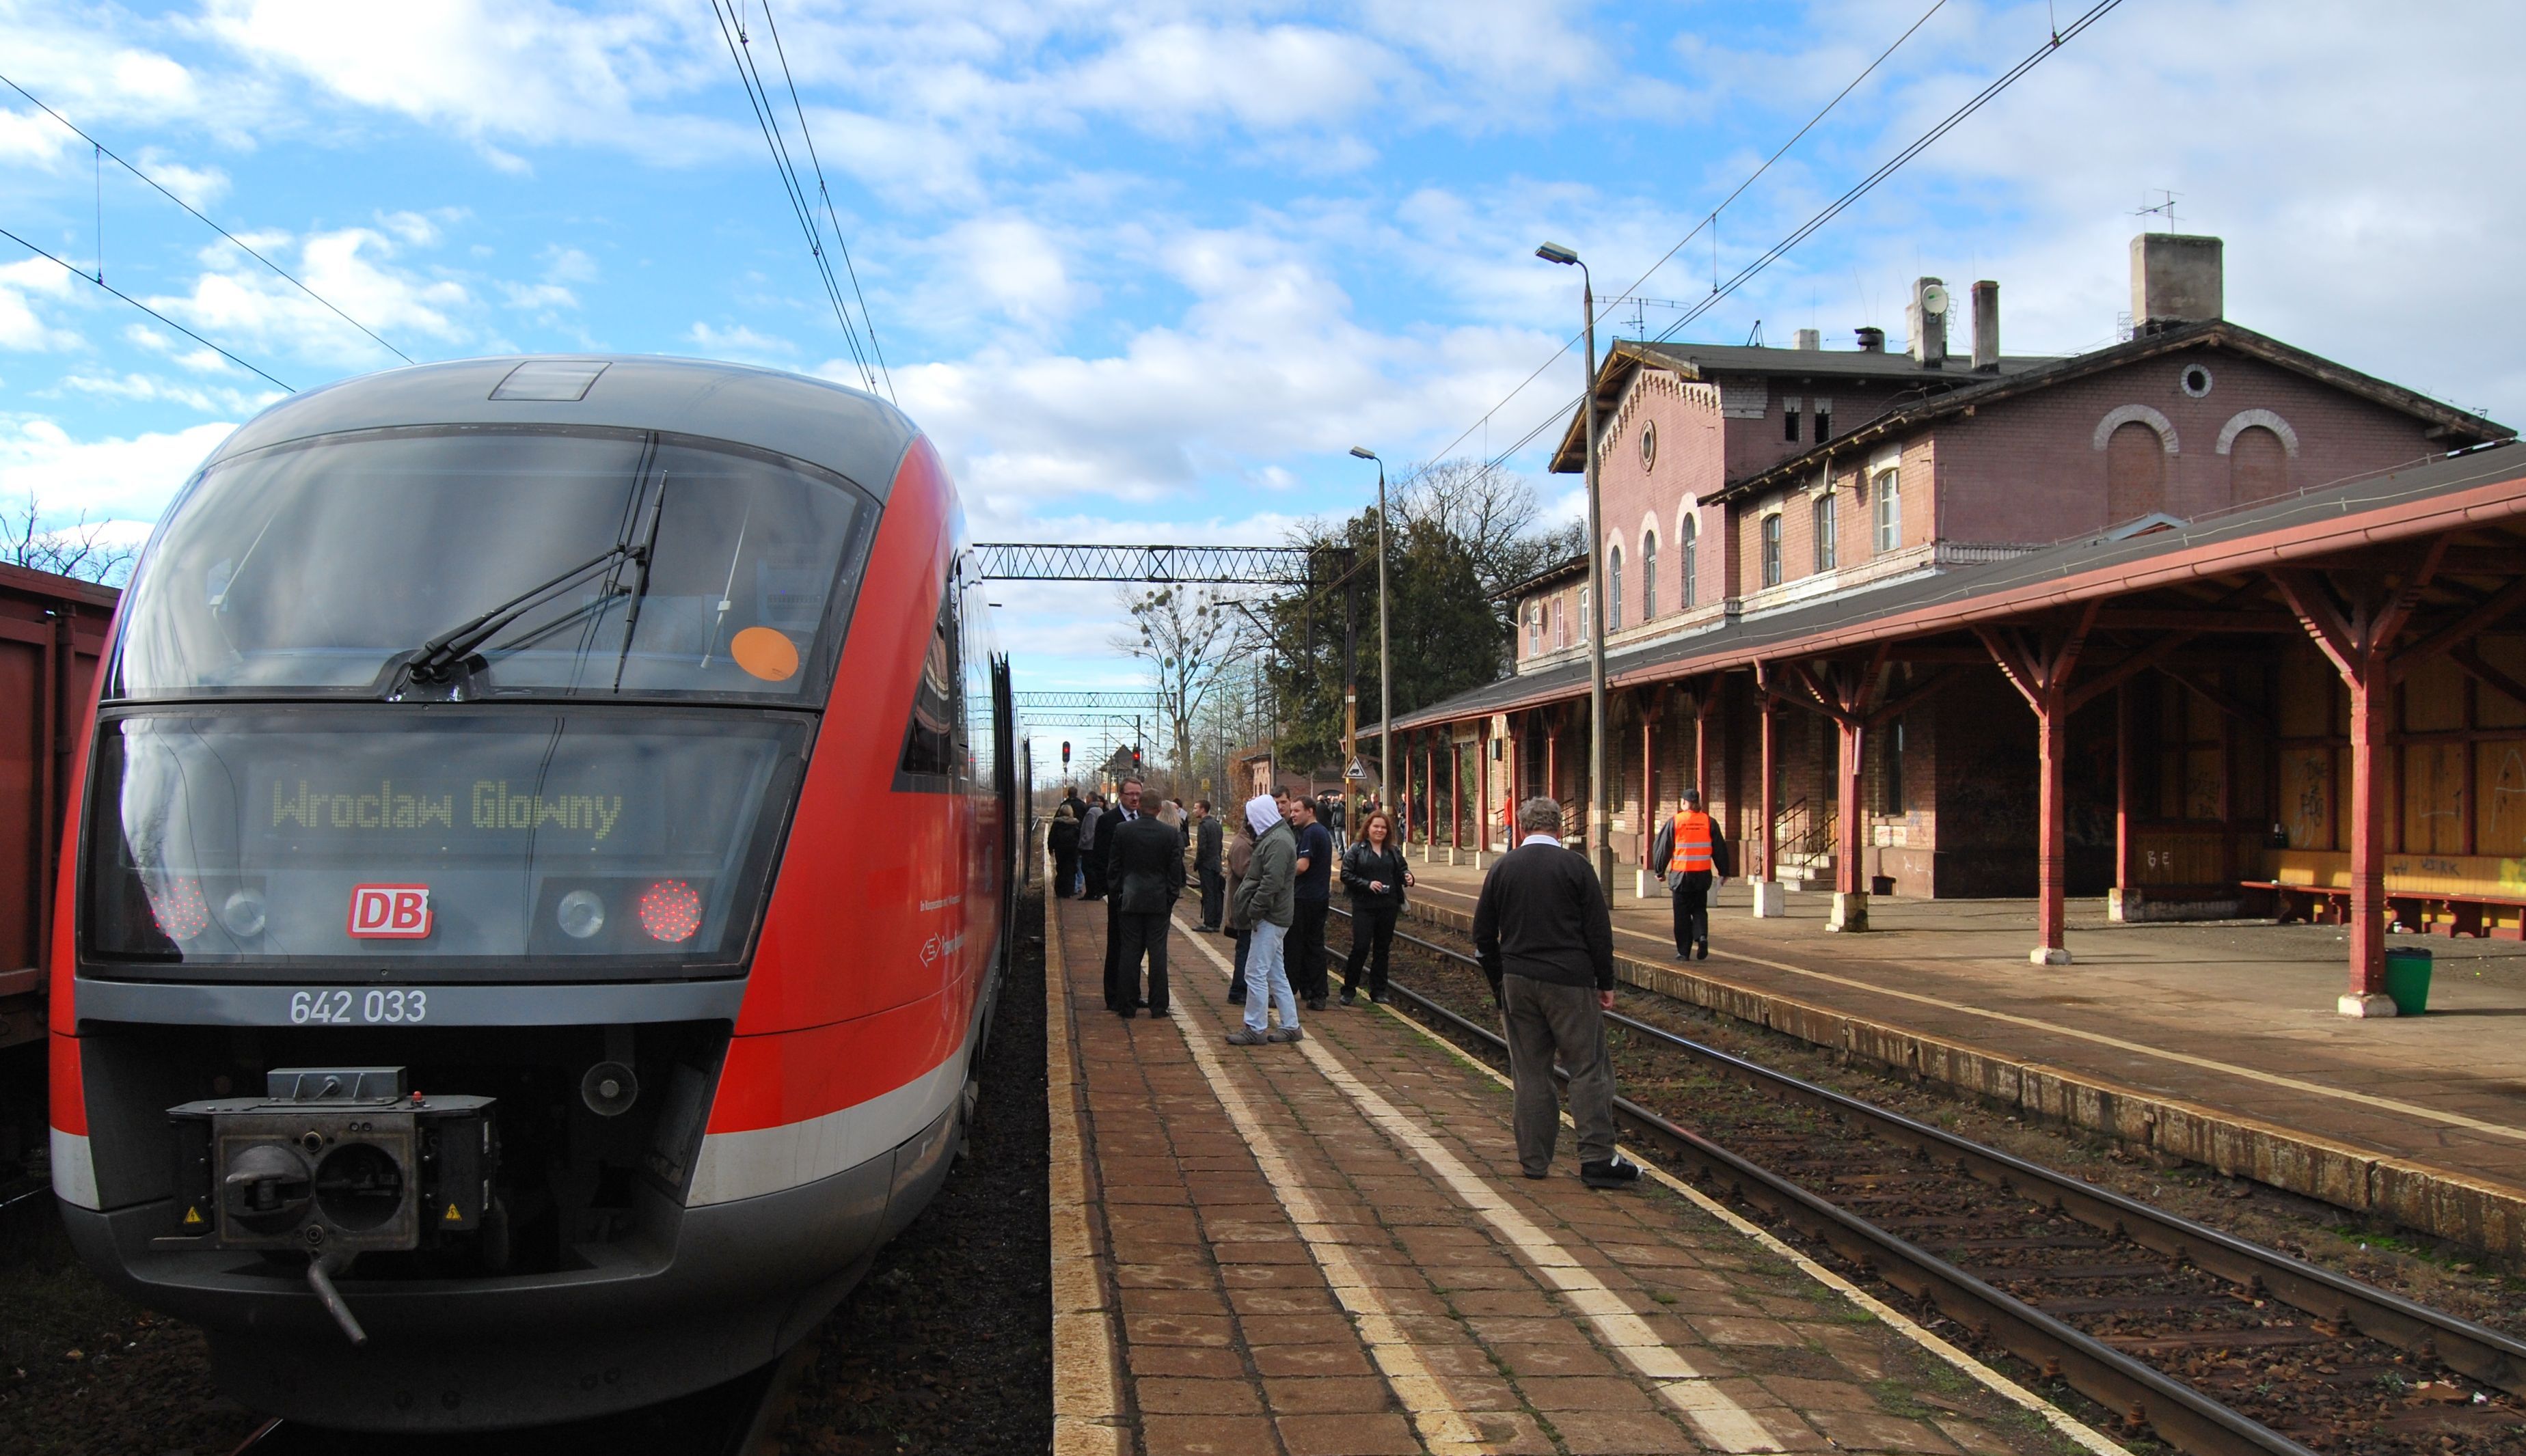 Za 18 mln złotych wyremontują linię kolejową do Oleśnicy. Pociągi przyśpieszą do 120 km/h, archiwum